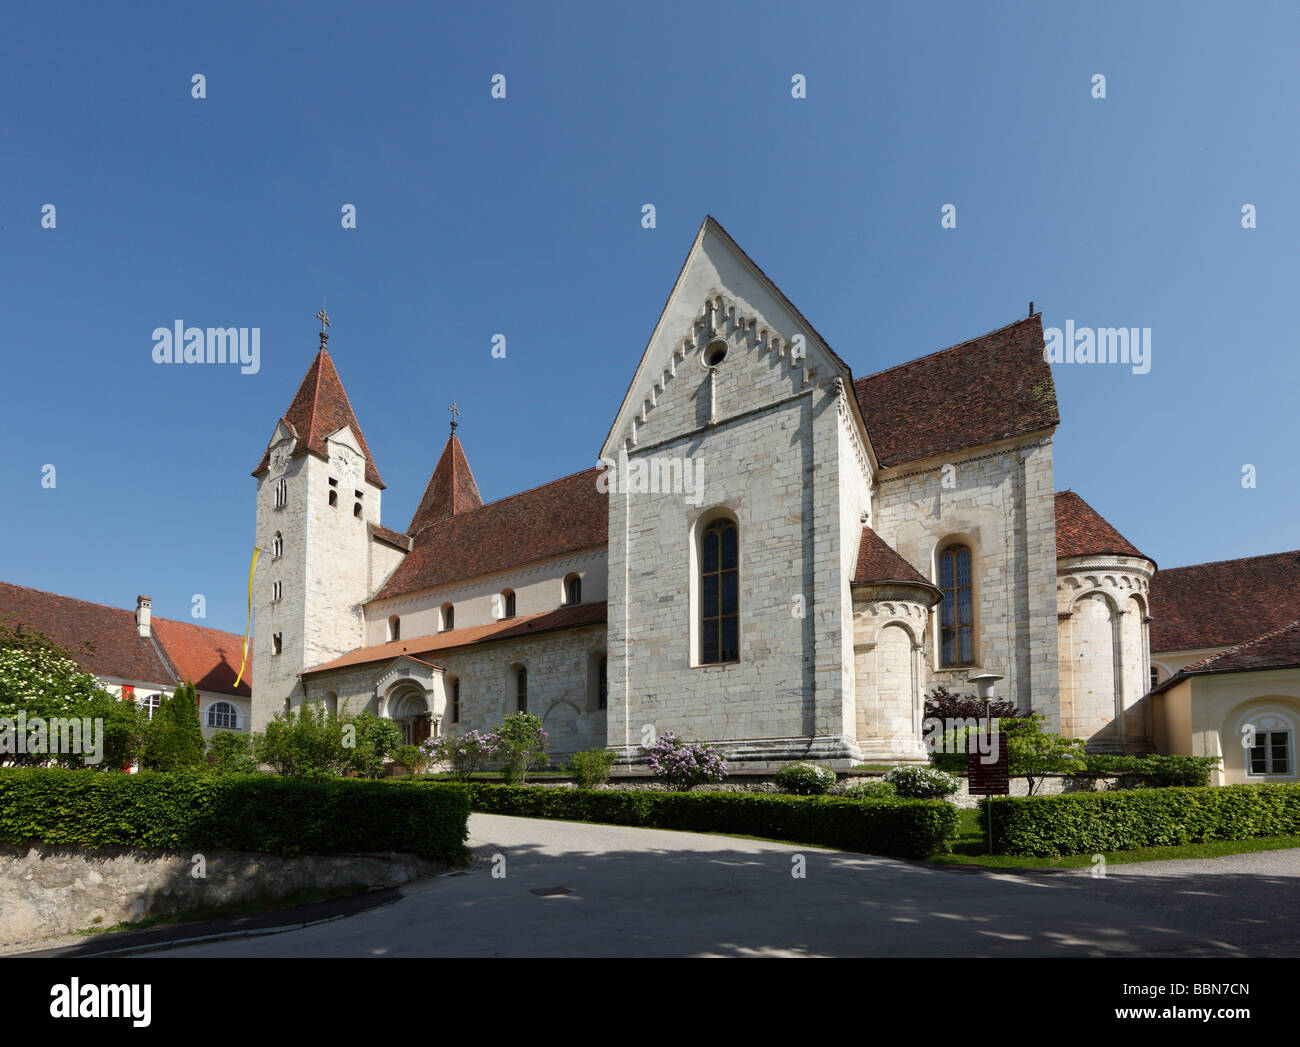 Stiftskirche, Collegiata, San Paolo im Lavanttal monastero, Carinzia, Austria, Europa Foto Stock